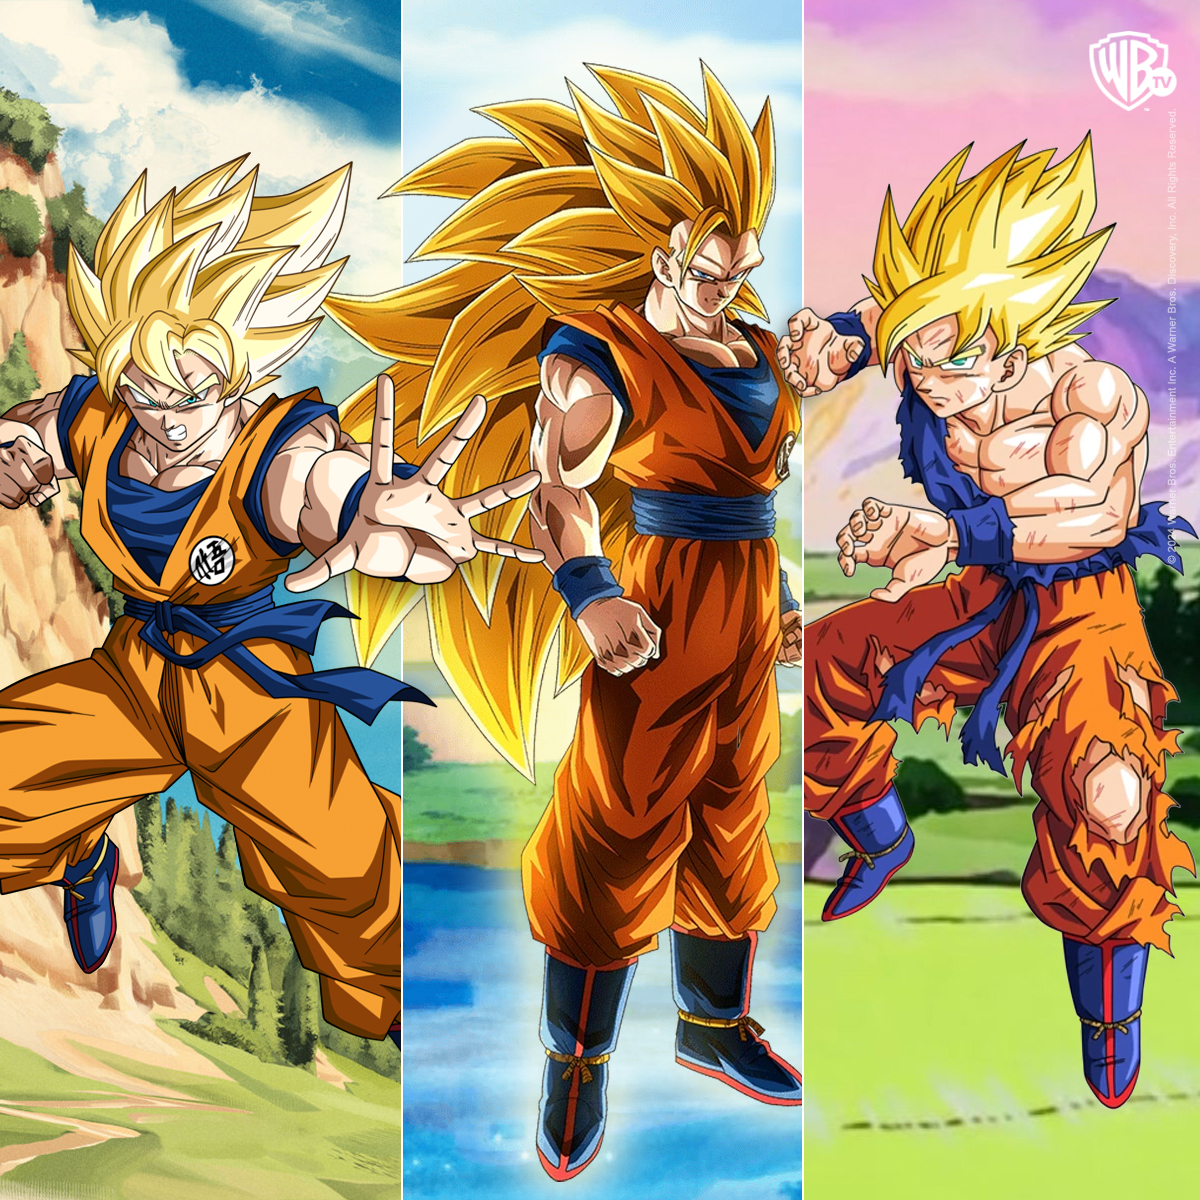 Momentos épicos que marcaron mi infancia: estos tres. ¿Cuál fue su transformación favorita? #GokuDay